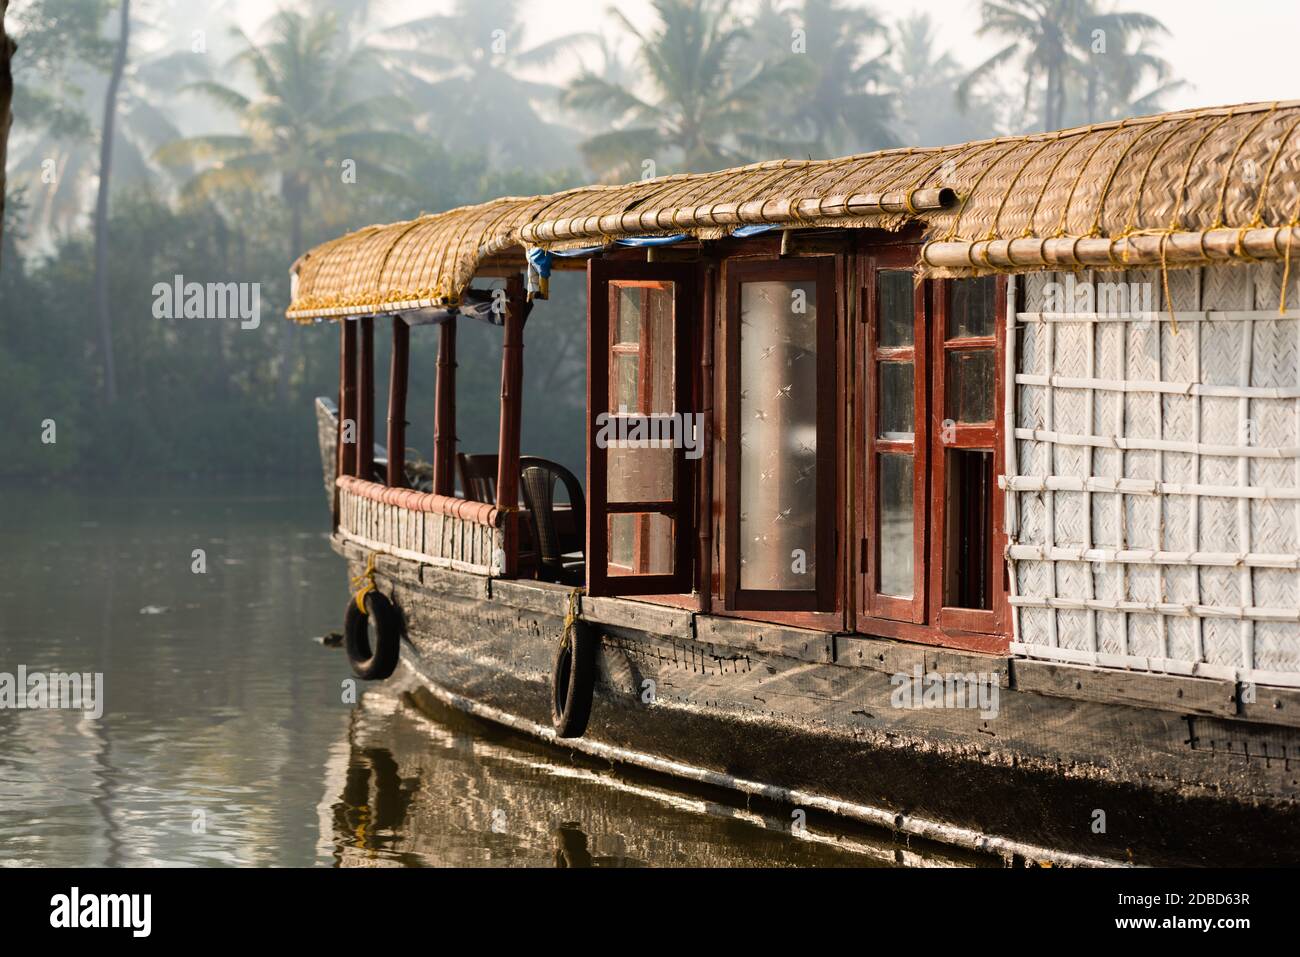 KOCHI, INDIA - 5 FEB 2017: Una barca tradizionale casa è ancorata sulle rive di un lago di pesca in Kerala Backwaters, India. I backwaters sono un po Foto Stock